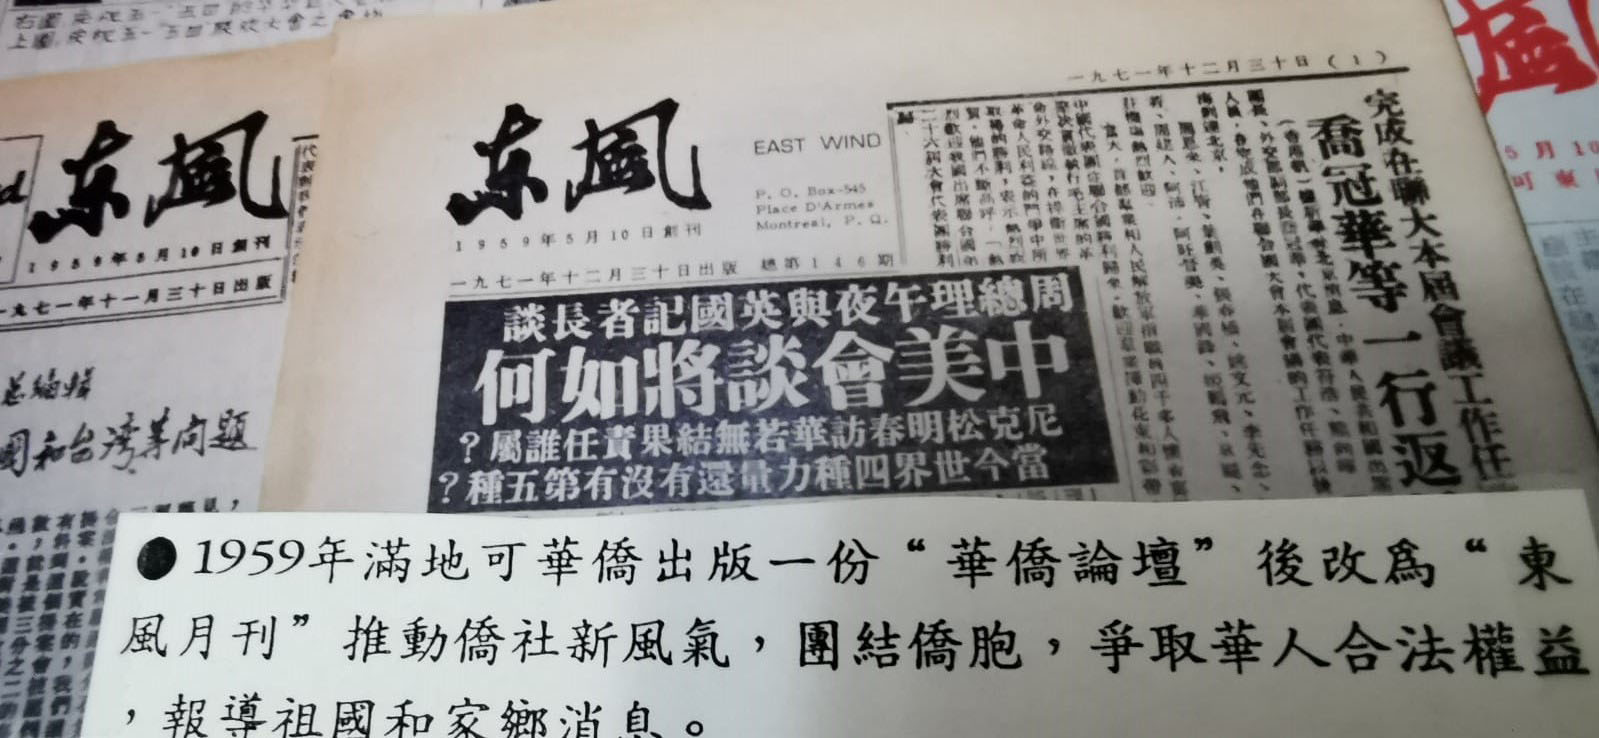 Exemplaires d'un journal en chinois